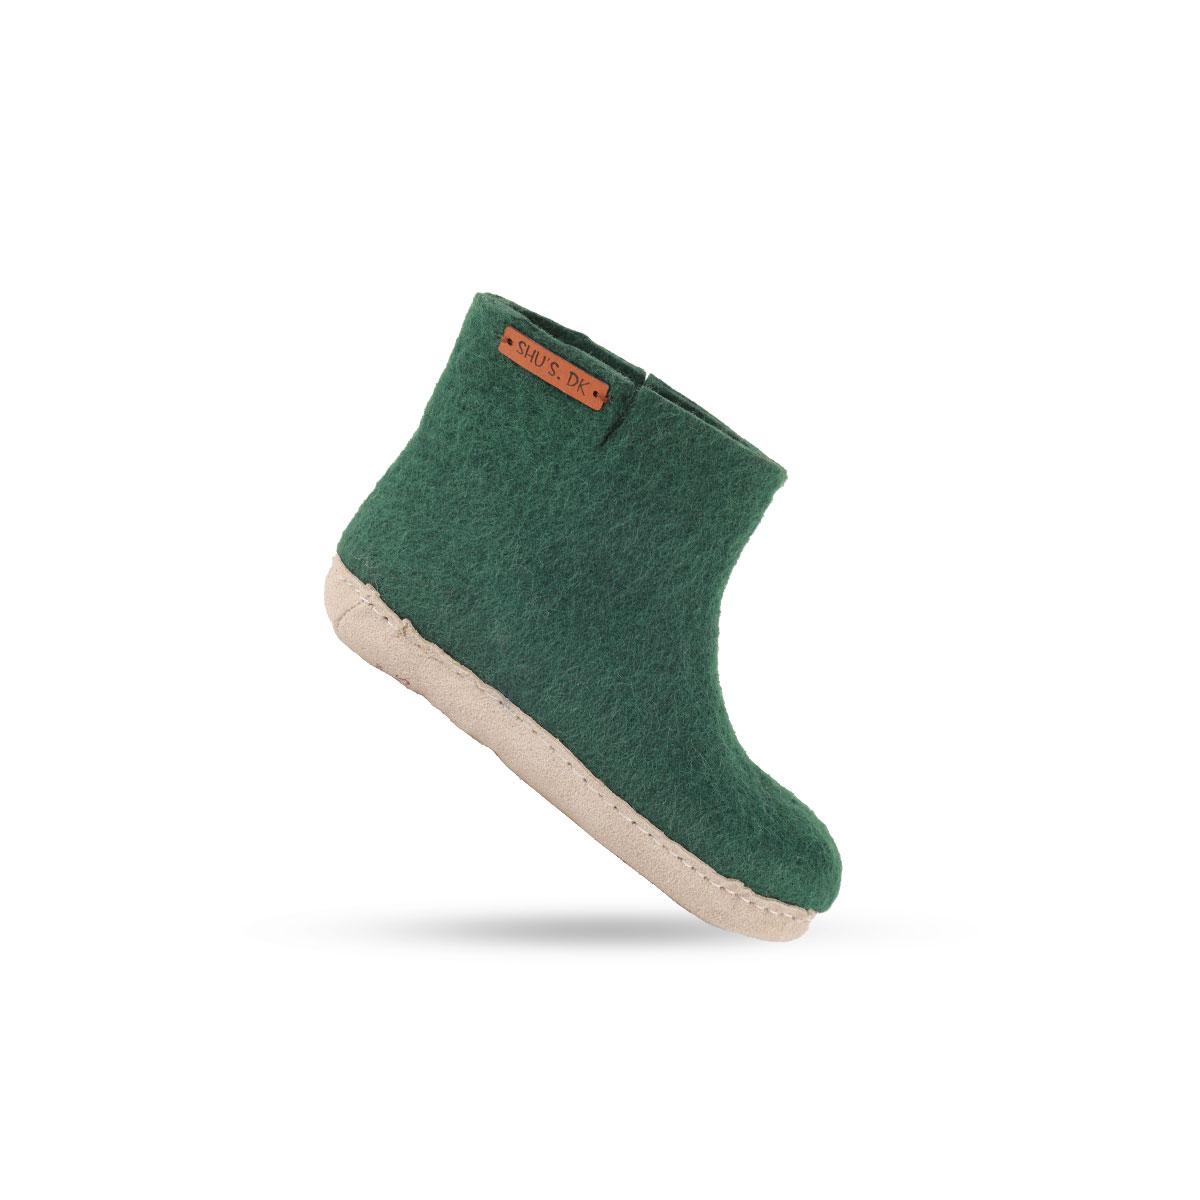 Se Uldstøvle til Børn (100% ren uld) - Model Grøn m/sål i skind - Dansk Design fra SHUS hos Shus.dk